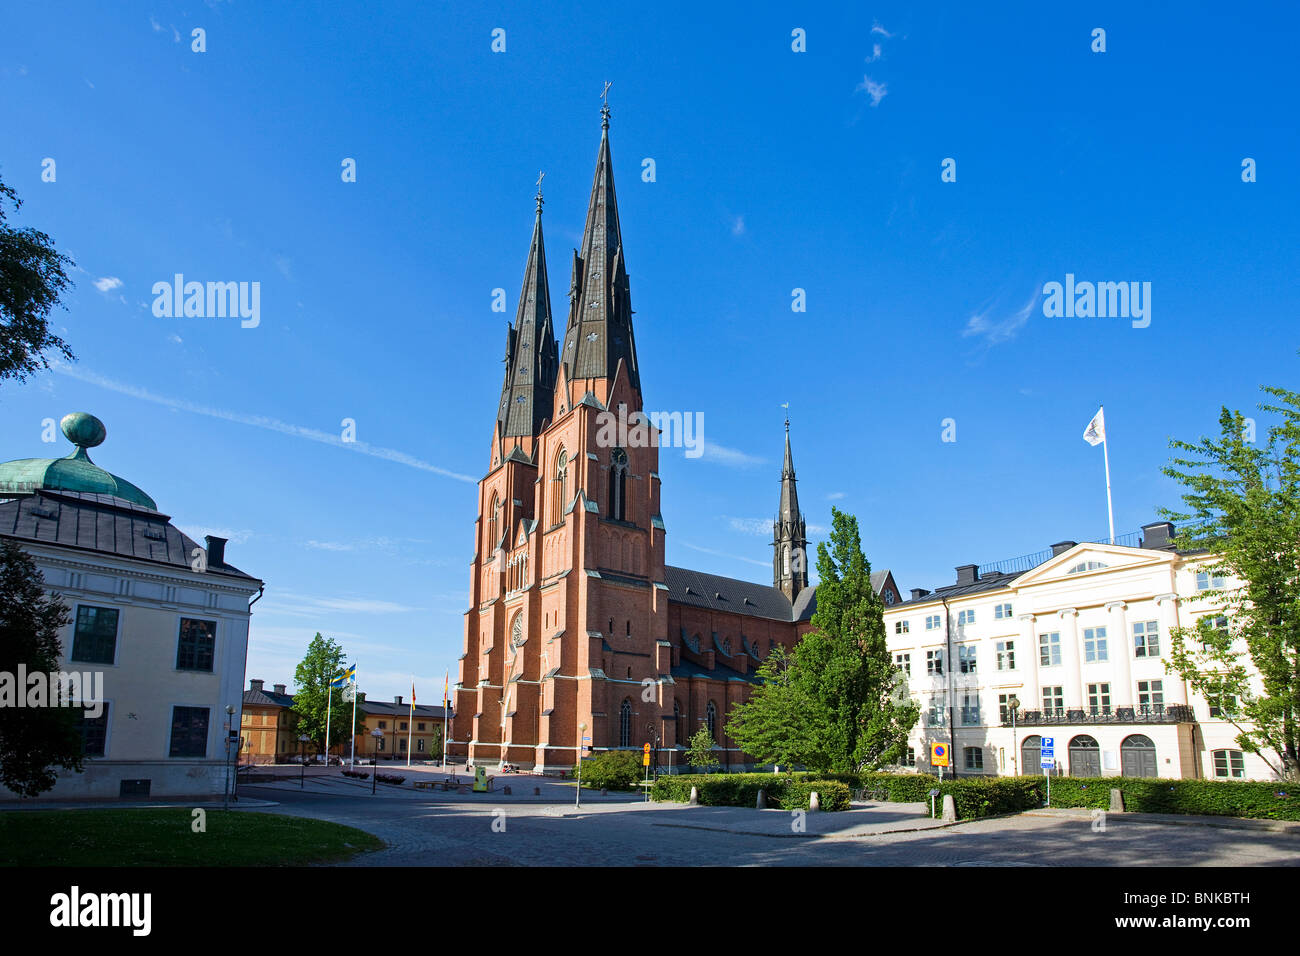 La iglesia Catedral de Uppsala Suecia viajar Viajes turismo vacaciones vacaciones Foto de stock